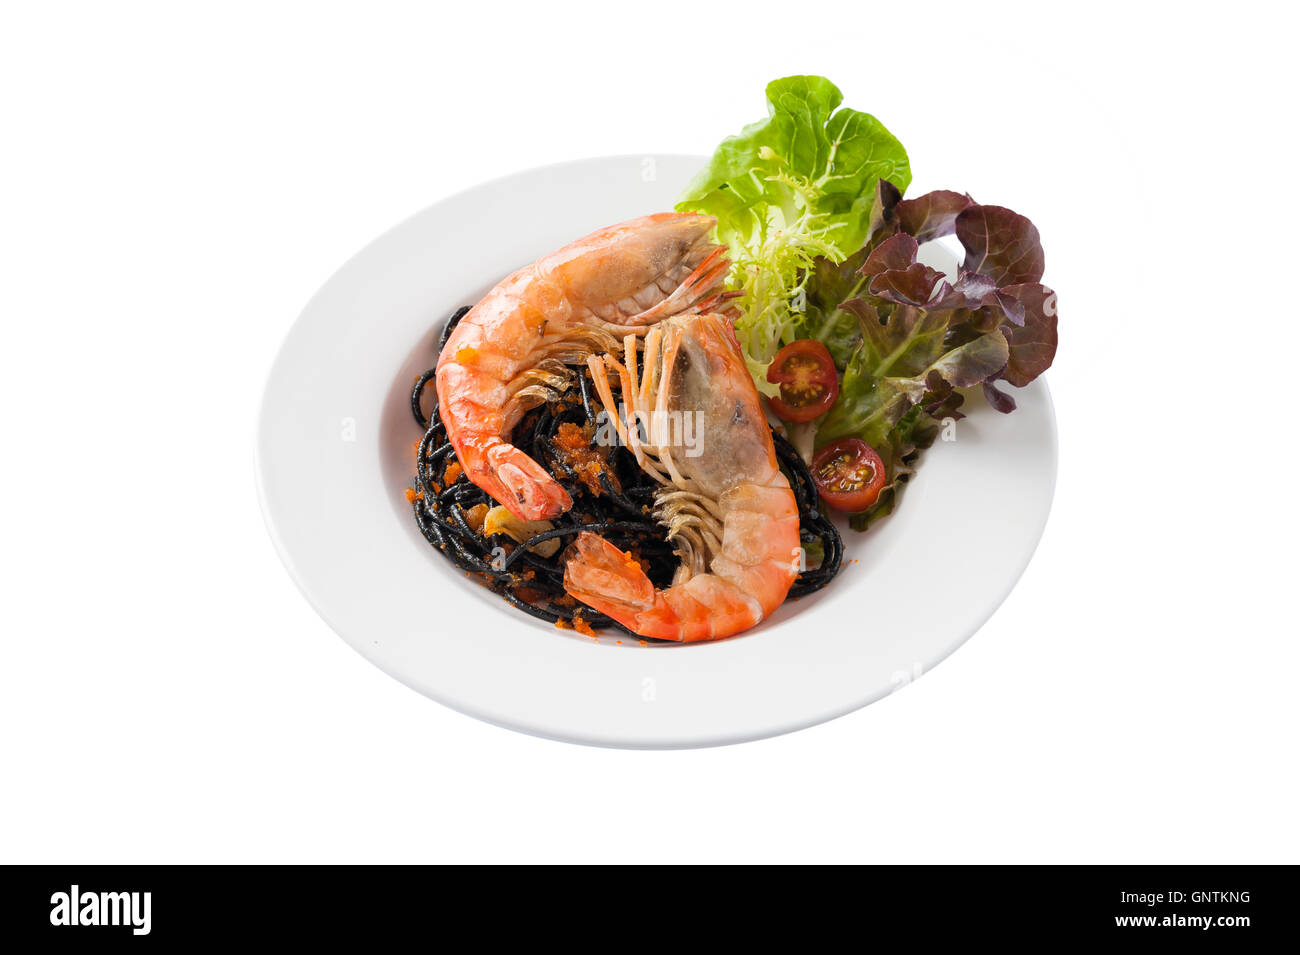 Vue avant du noir de style japonais avec des pâtes aux crevettes et légumes thaï river en plat de céramique isolé sur fond blanc Banque D'Images